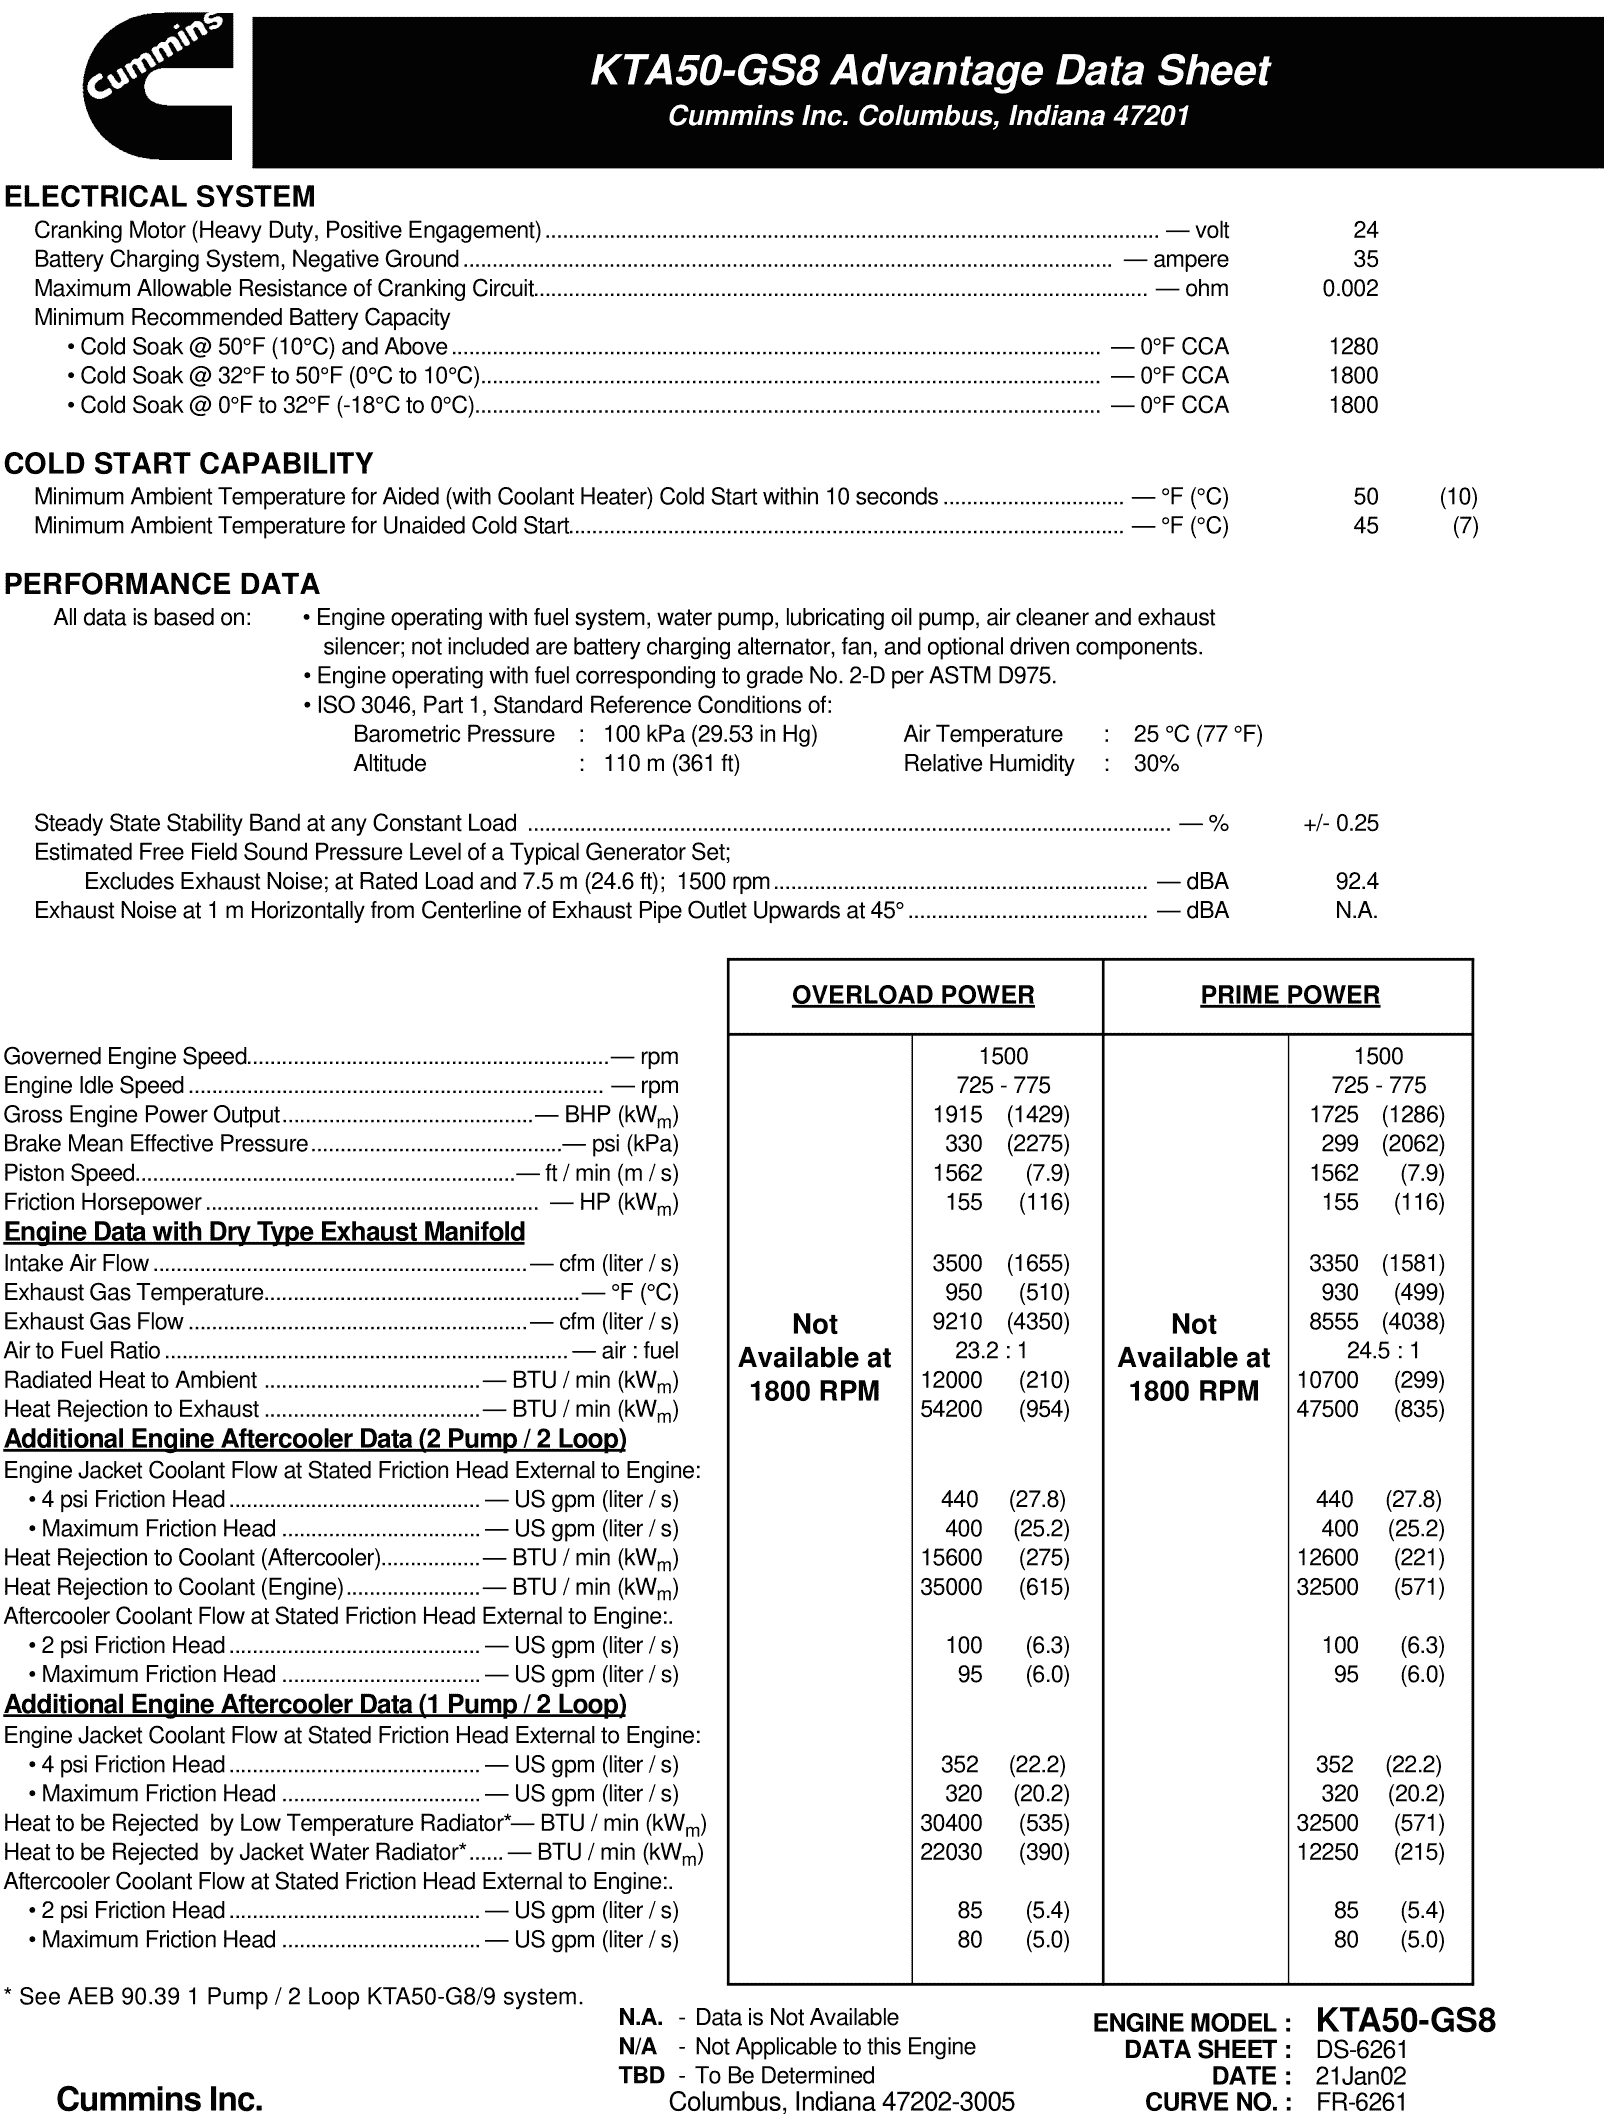 Cummins KTA50-GS8 datasheet